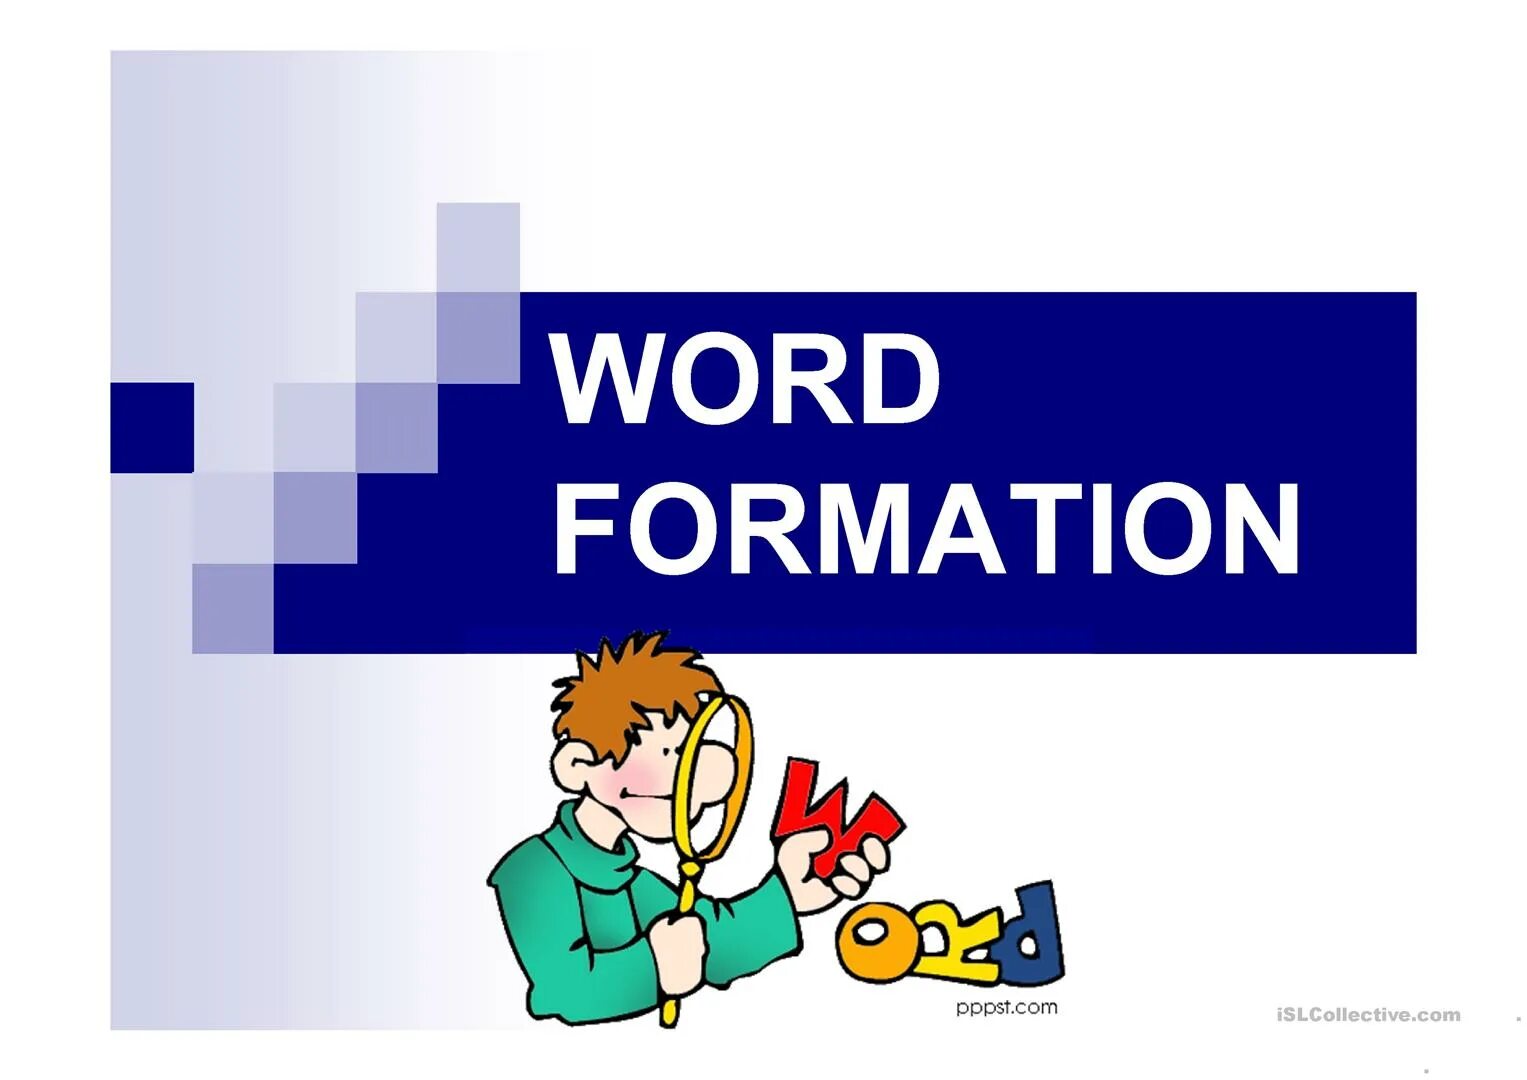 Word formation 4. Word formation. English Word-formation. Word formation в английском. Word formation надпись.